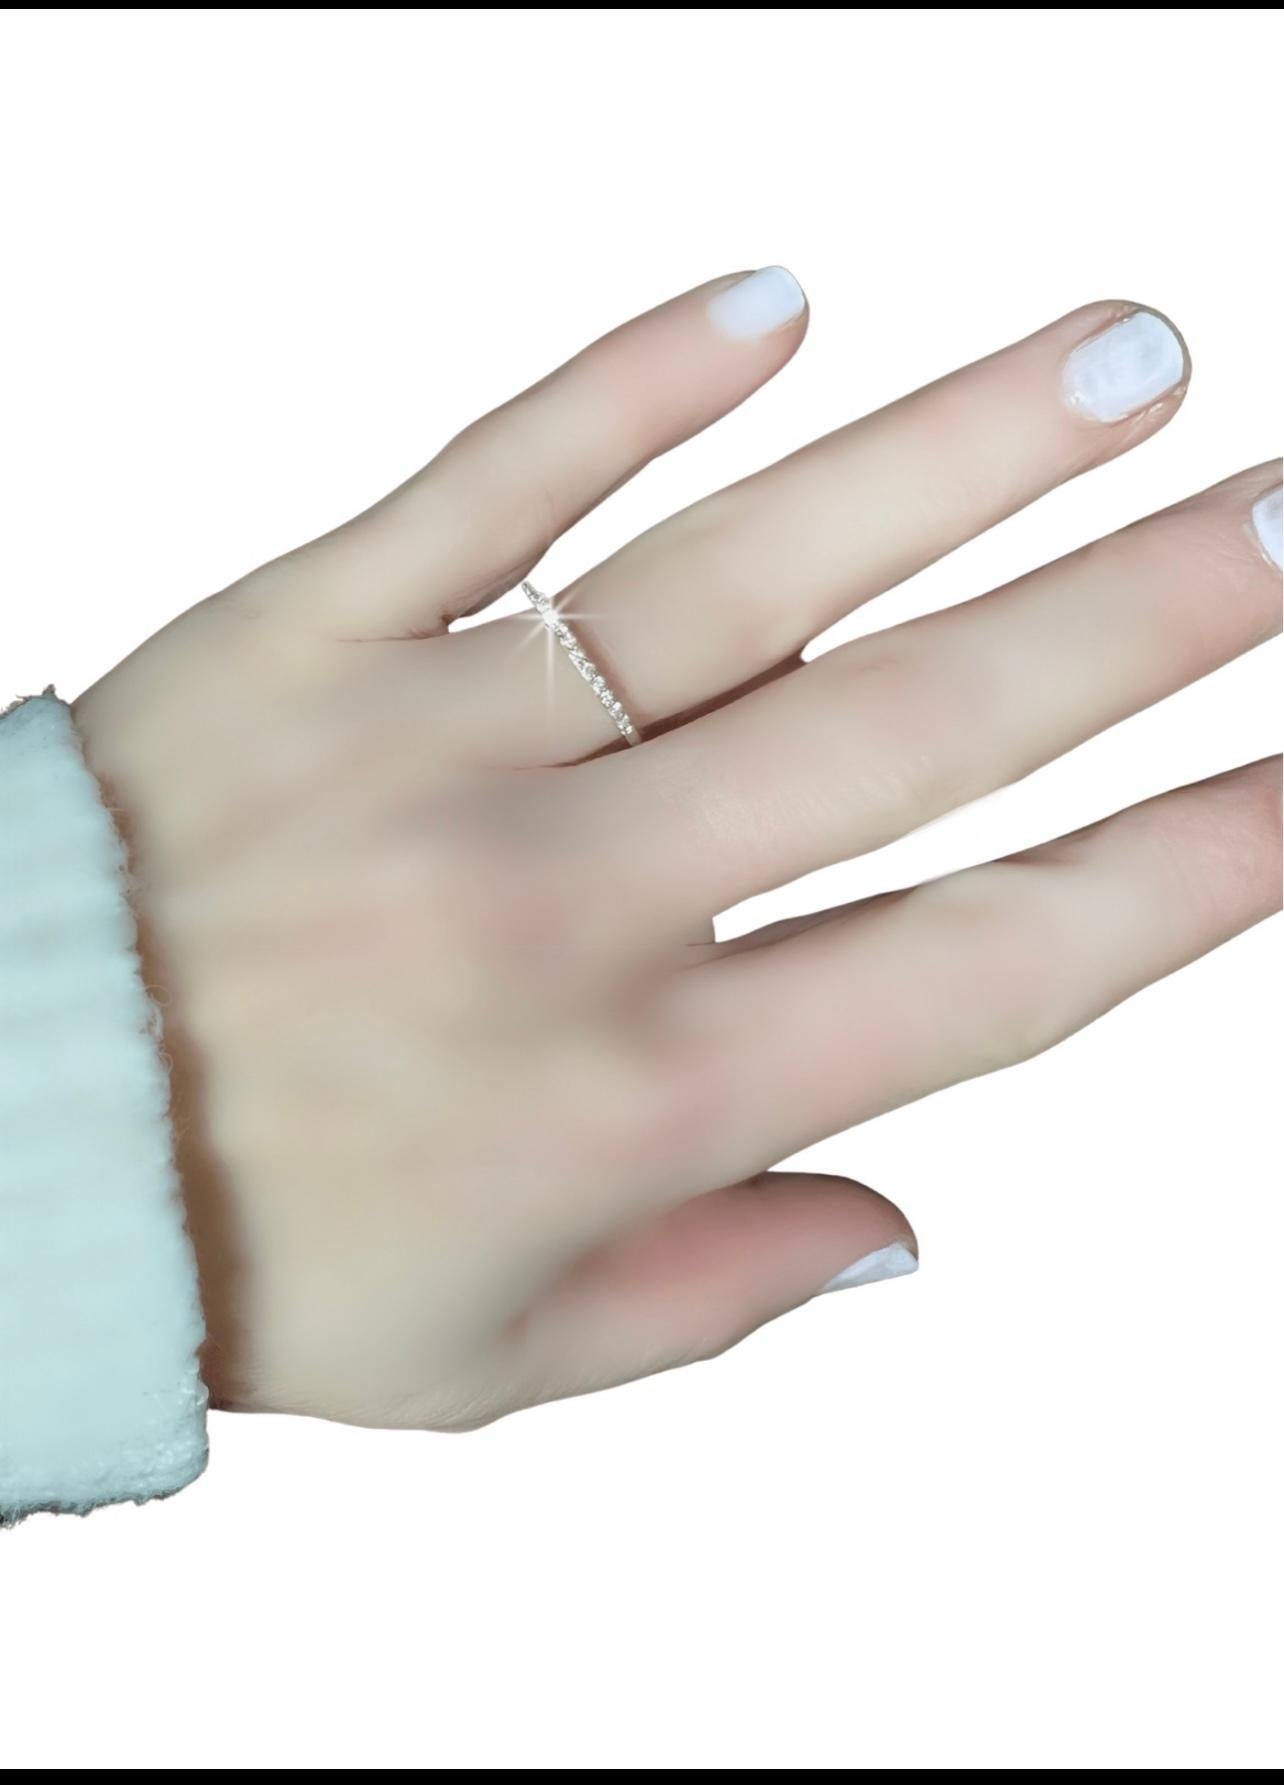 diamond embedded in finger